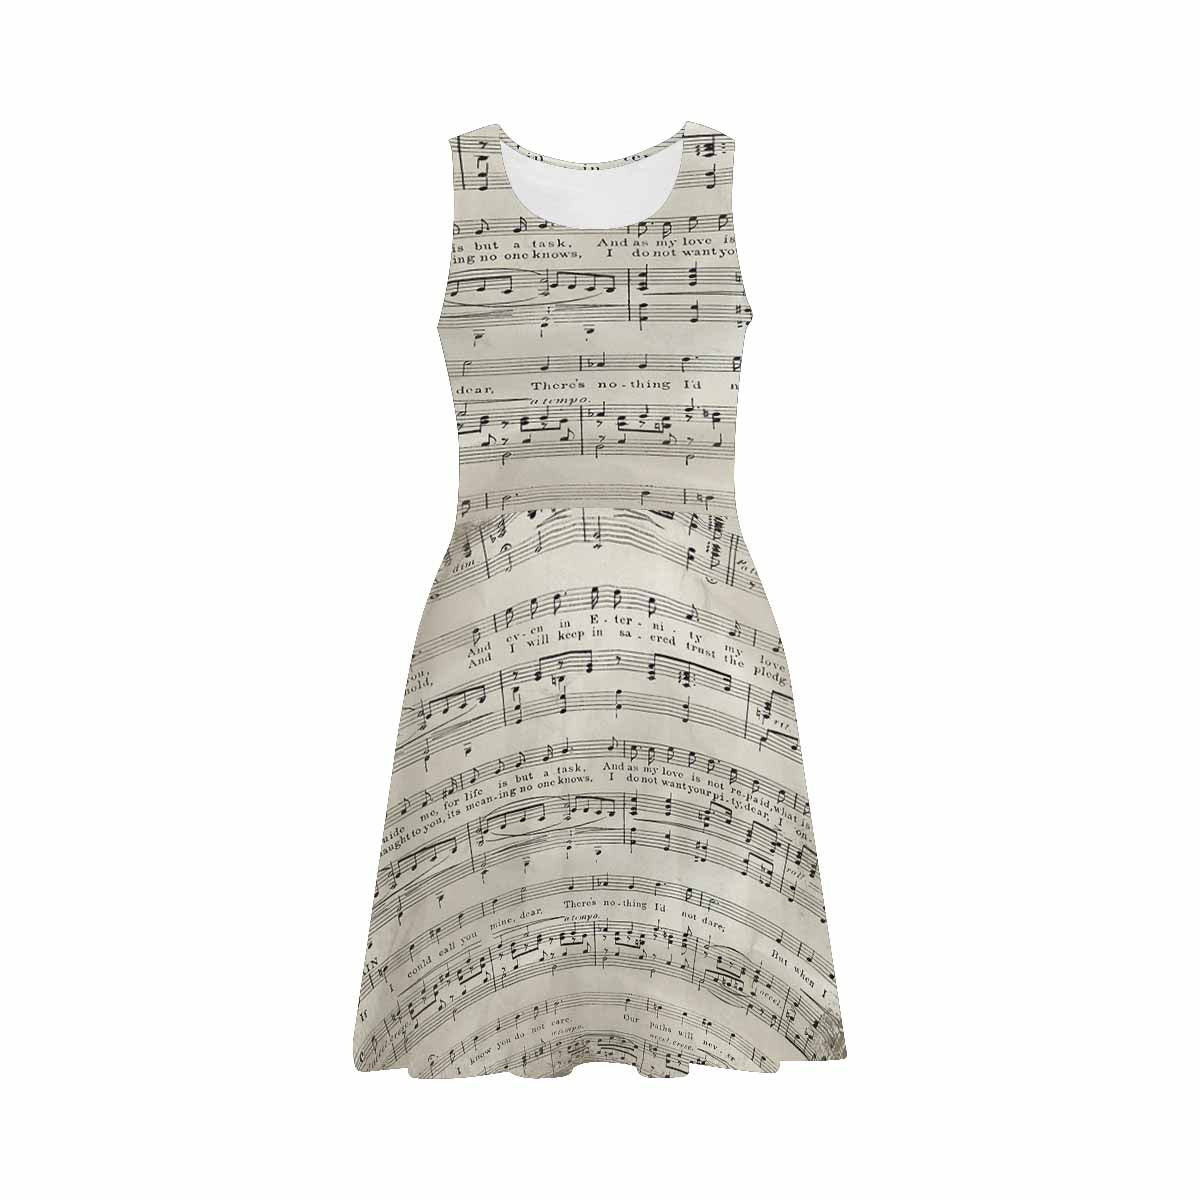 Antique General summer dress, MODEL 09534, design 19